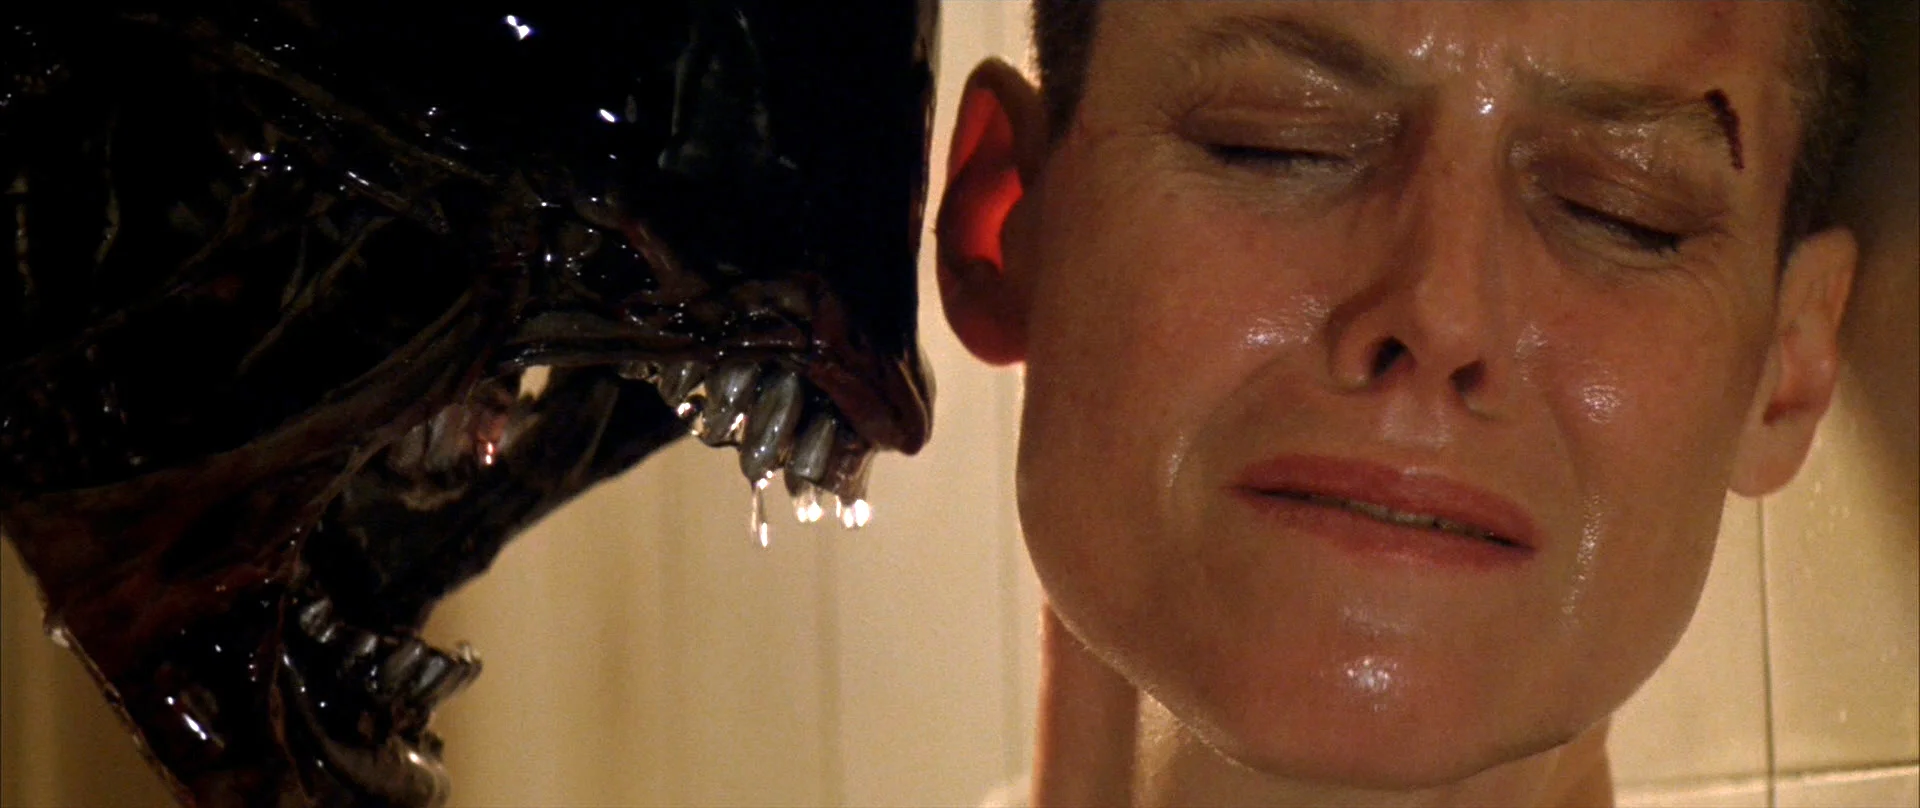 La classifica dei film di Alien dal peggiore al migliore